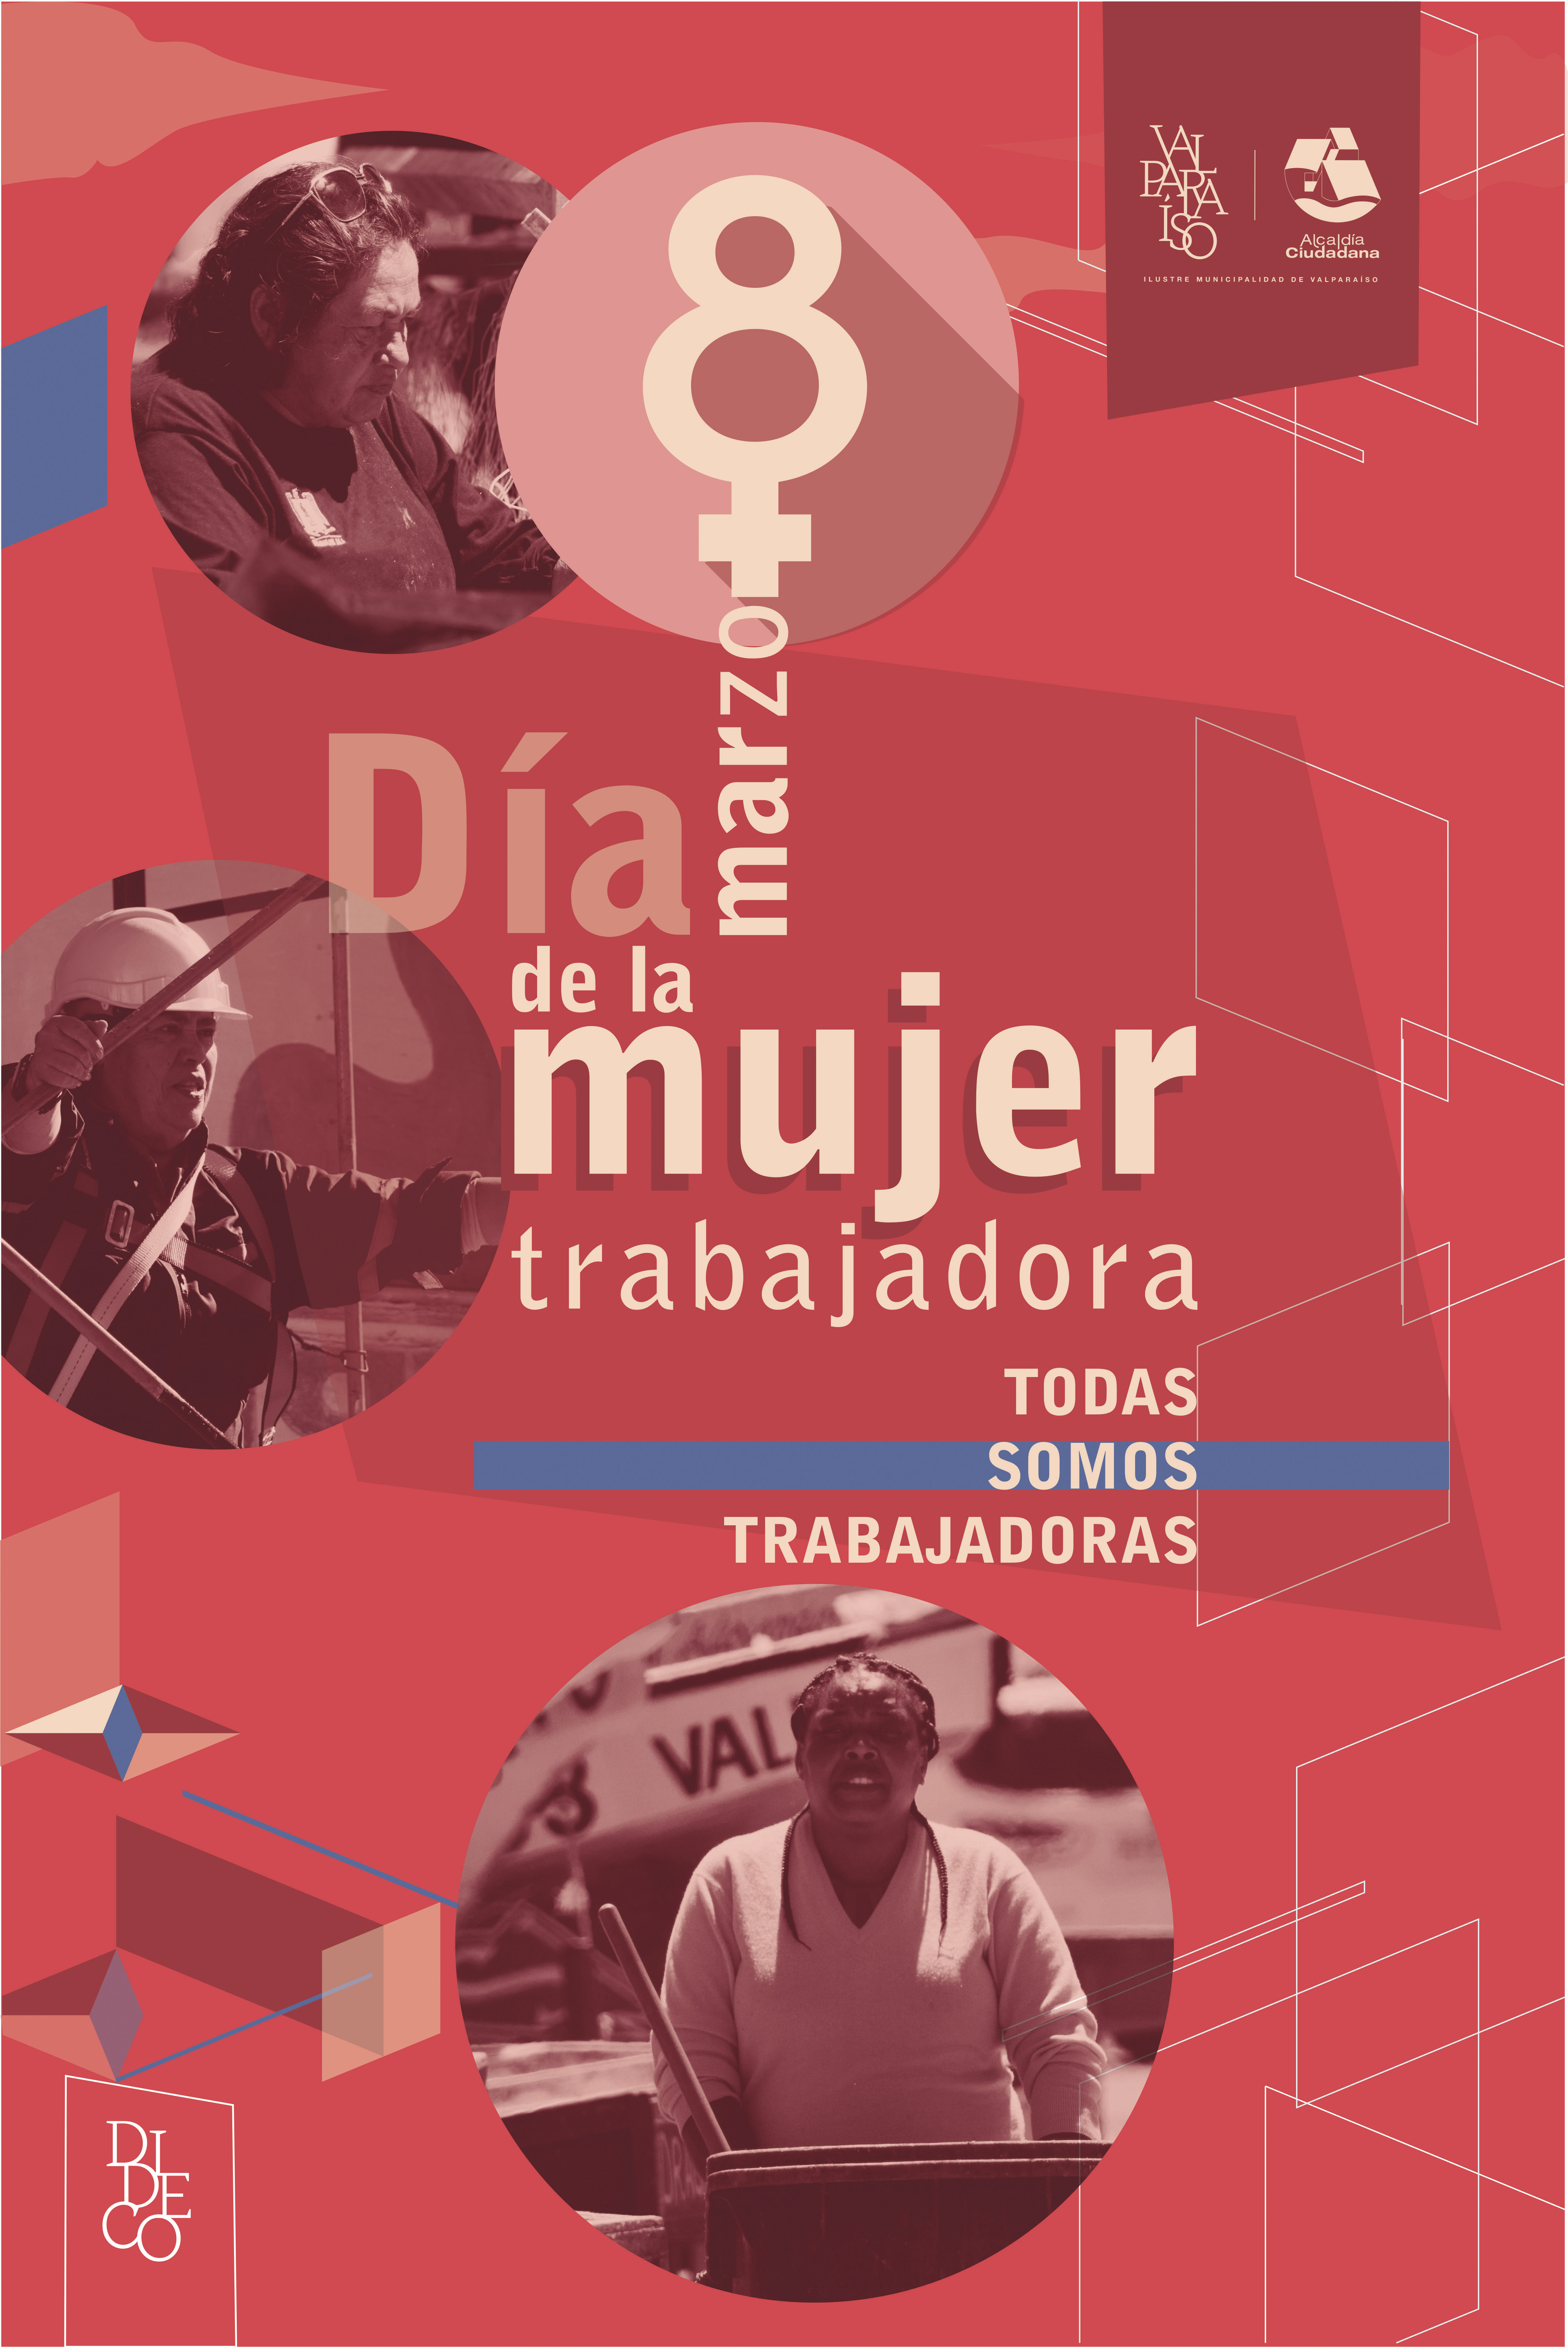 Con el acento en la memoria histórica y el trabajo se conmemorará el Día de la Mujer en Valparaíso